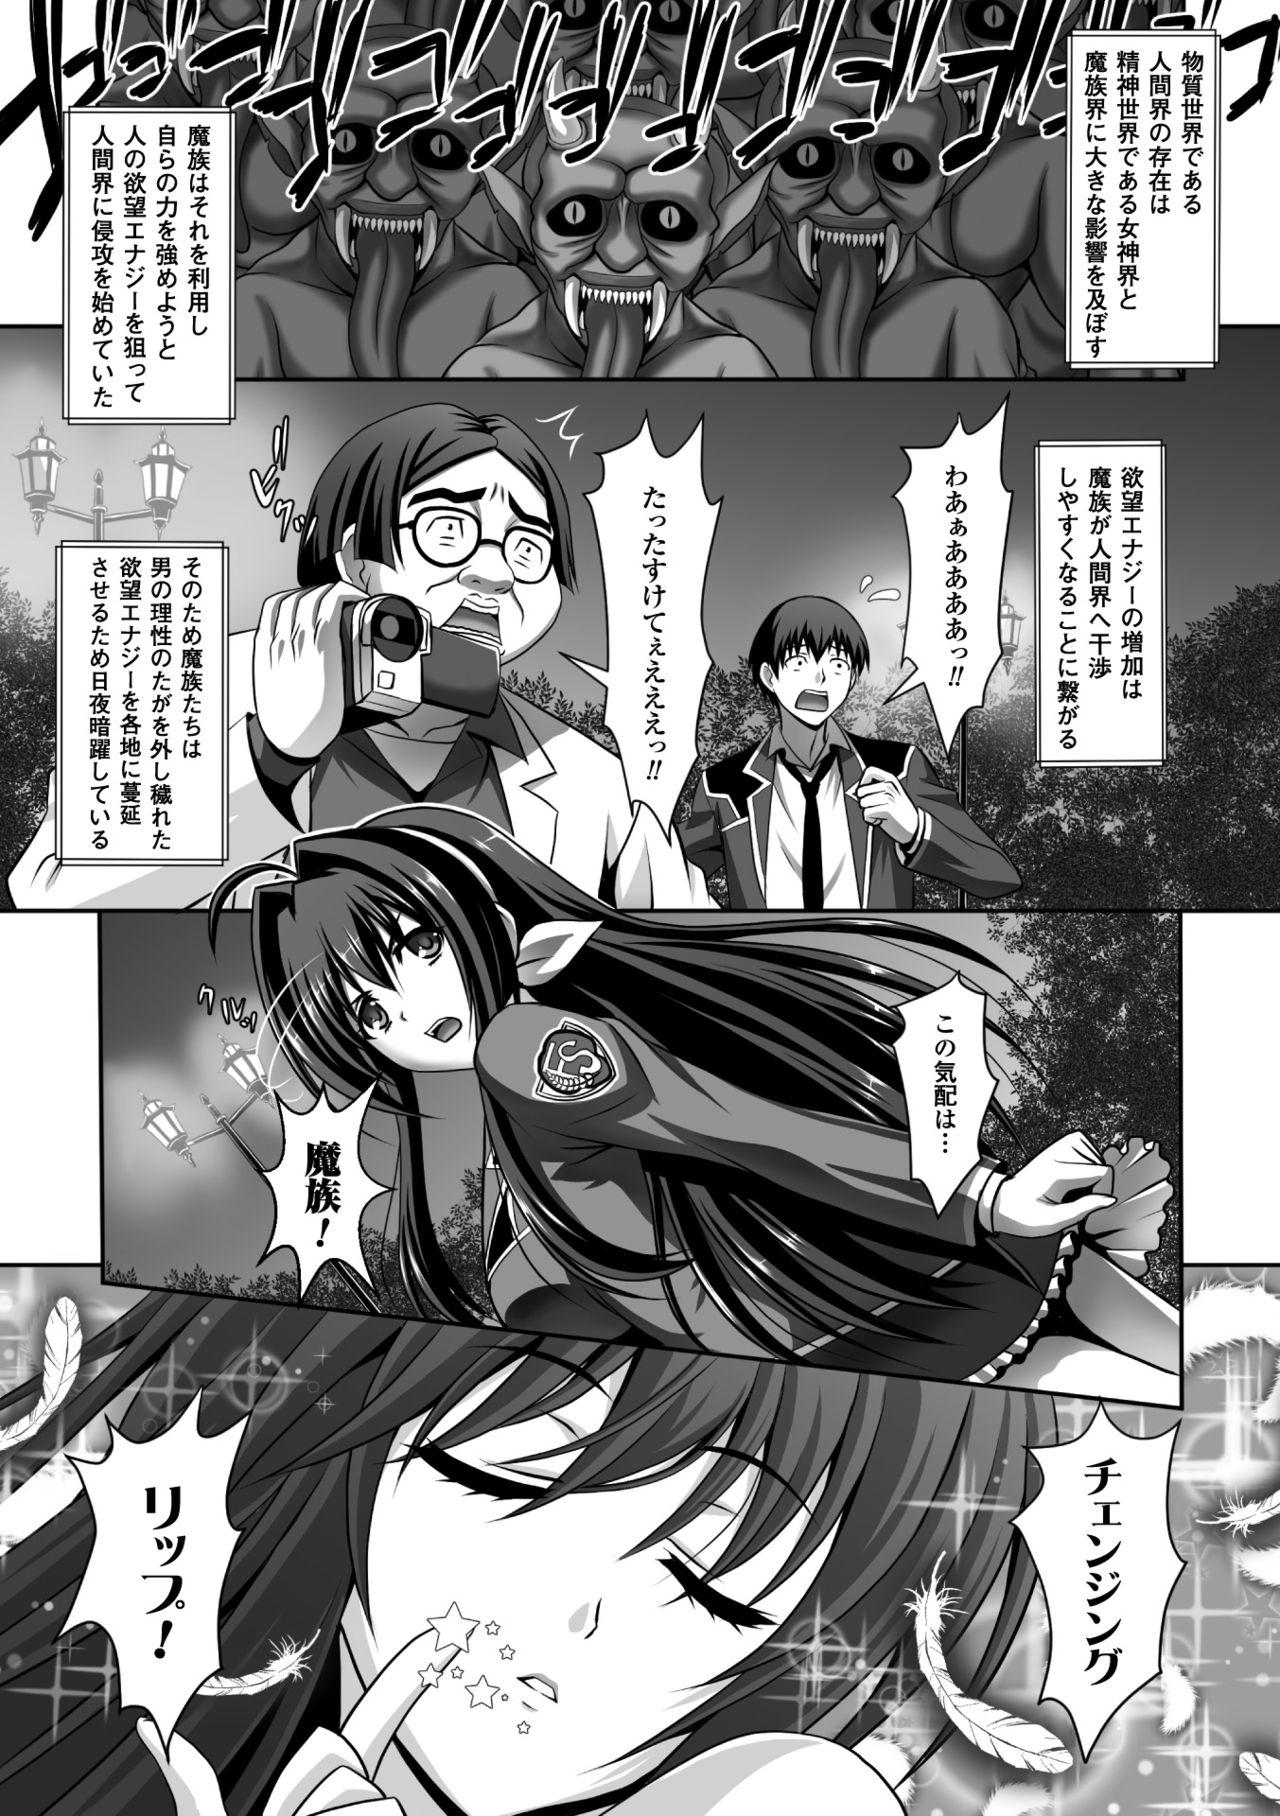 Seigi no Heroine Kangoku File Vol. 5 4